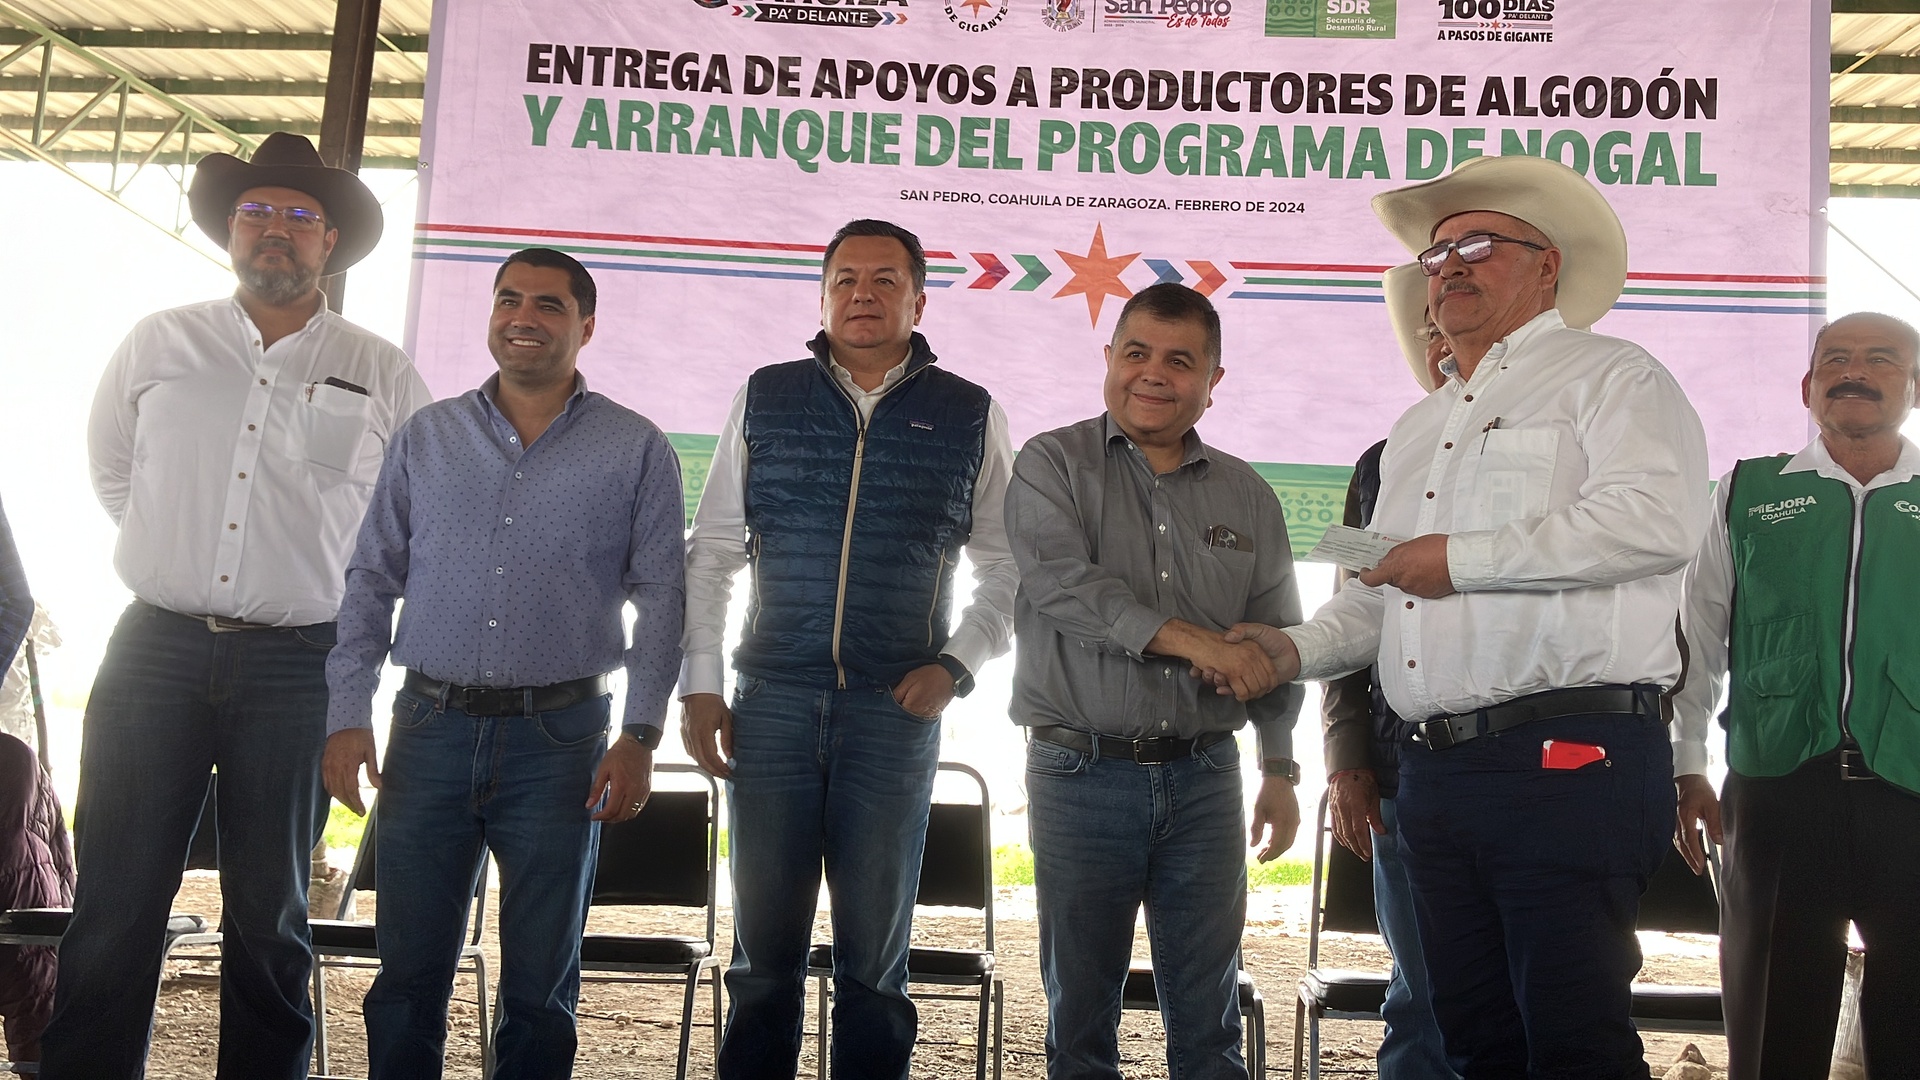 En el municipio de San Pedro se hizo la entrega de apoyos a productores de algodón y de nogal, cuya inversión es de 9 millones de pesos.